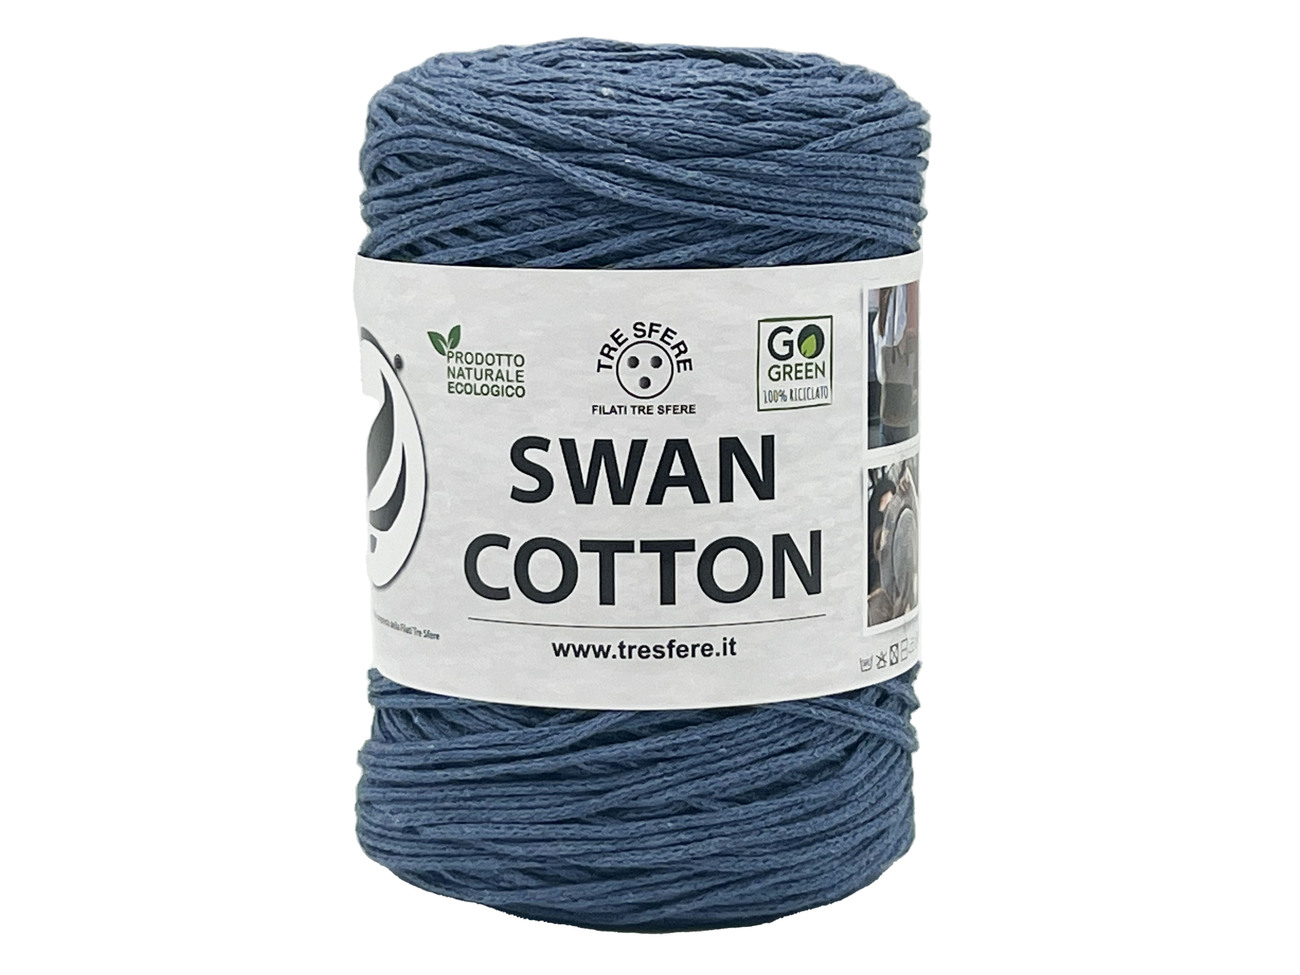 CORDINO SWAN COTTON  250 grammi - jeans